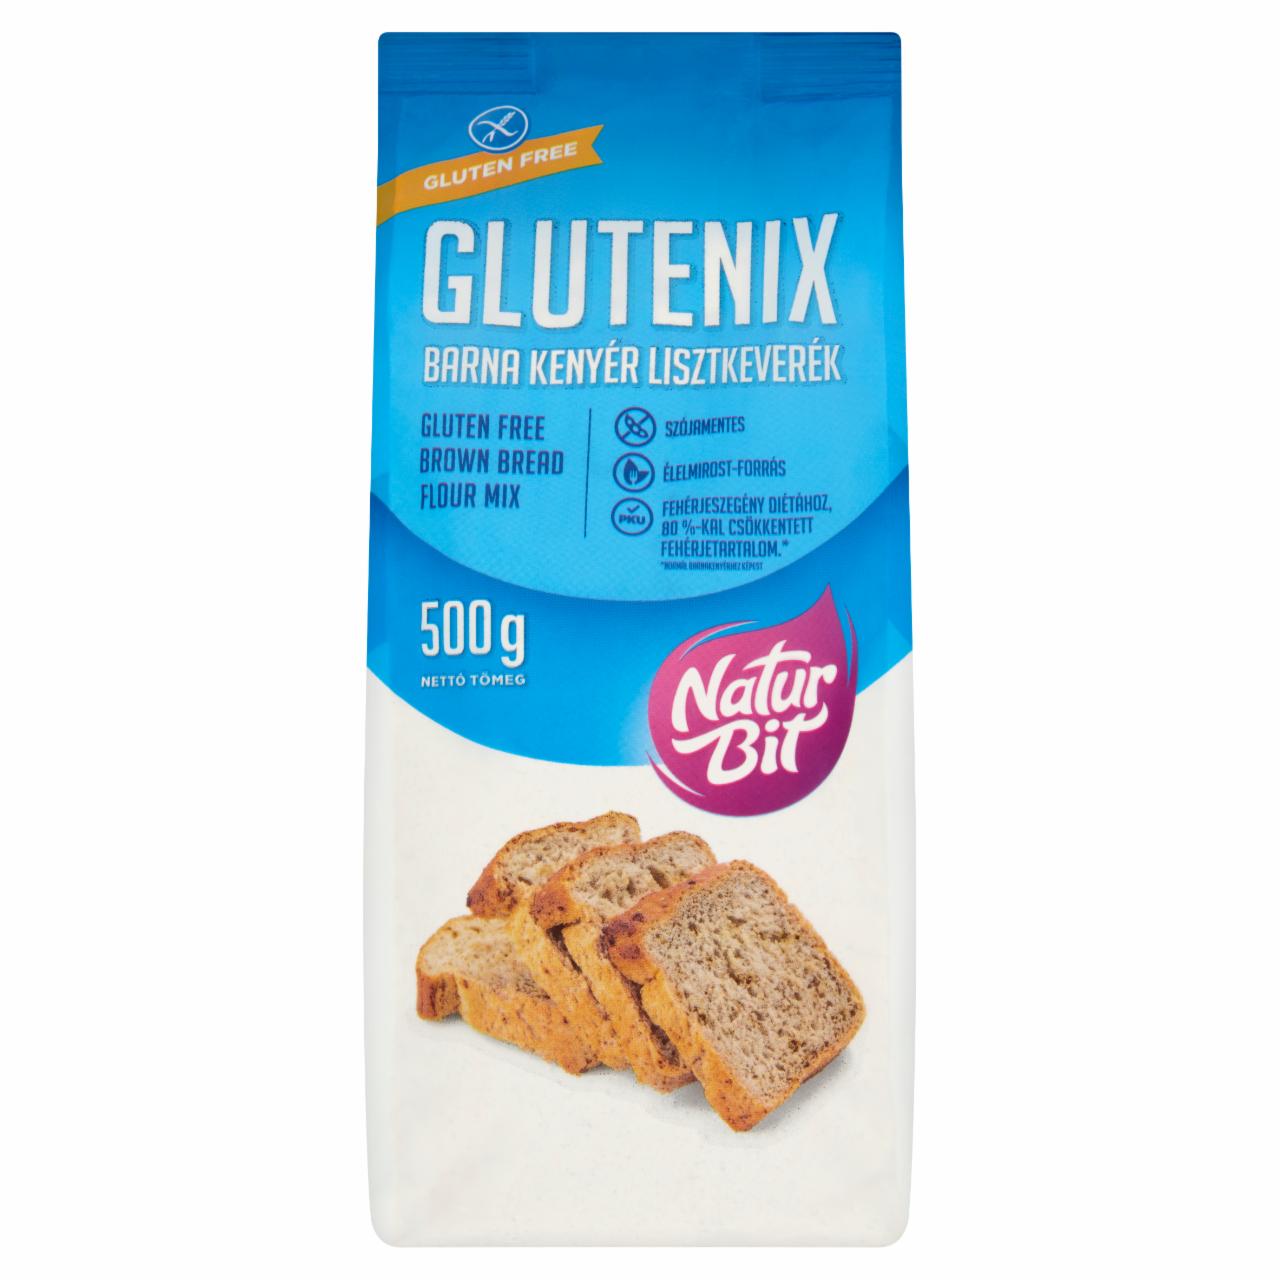 Képek - Naturbit Glutenix barna kenyér lisztkeverék 500 g